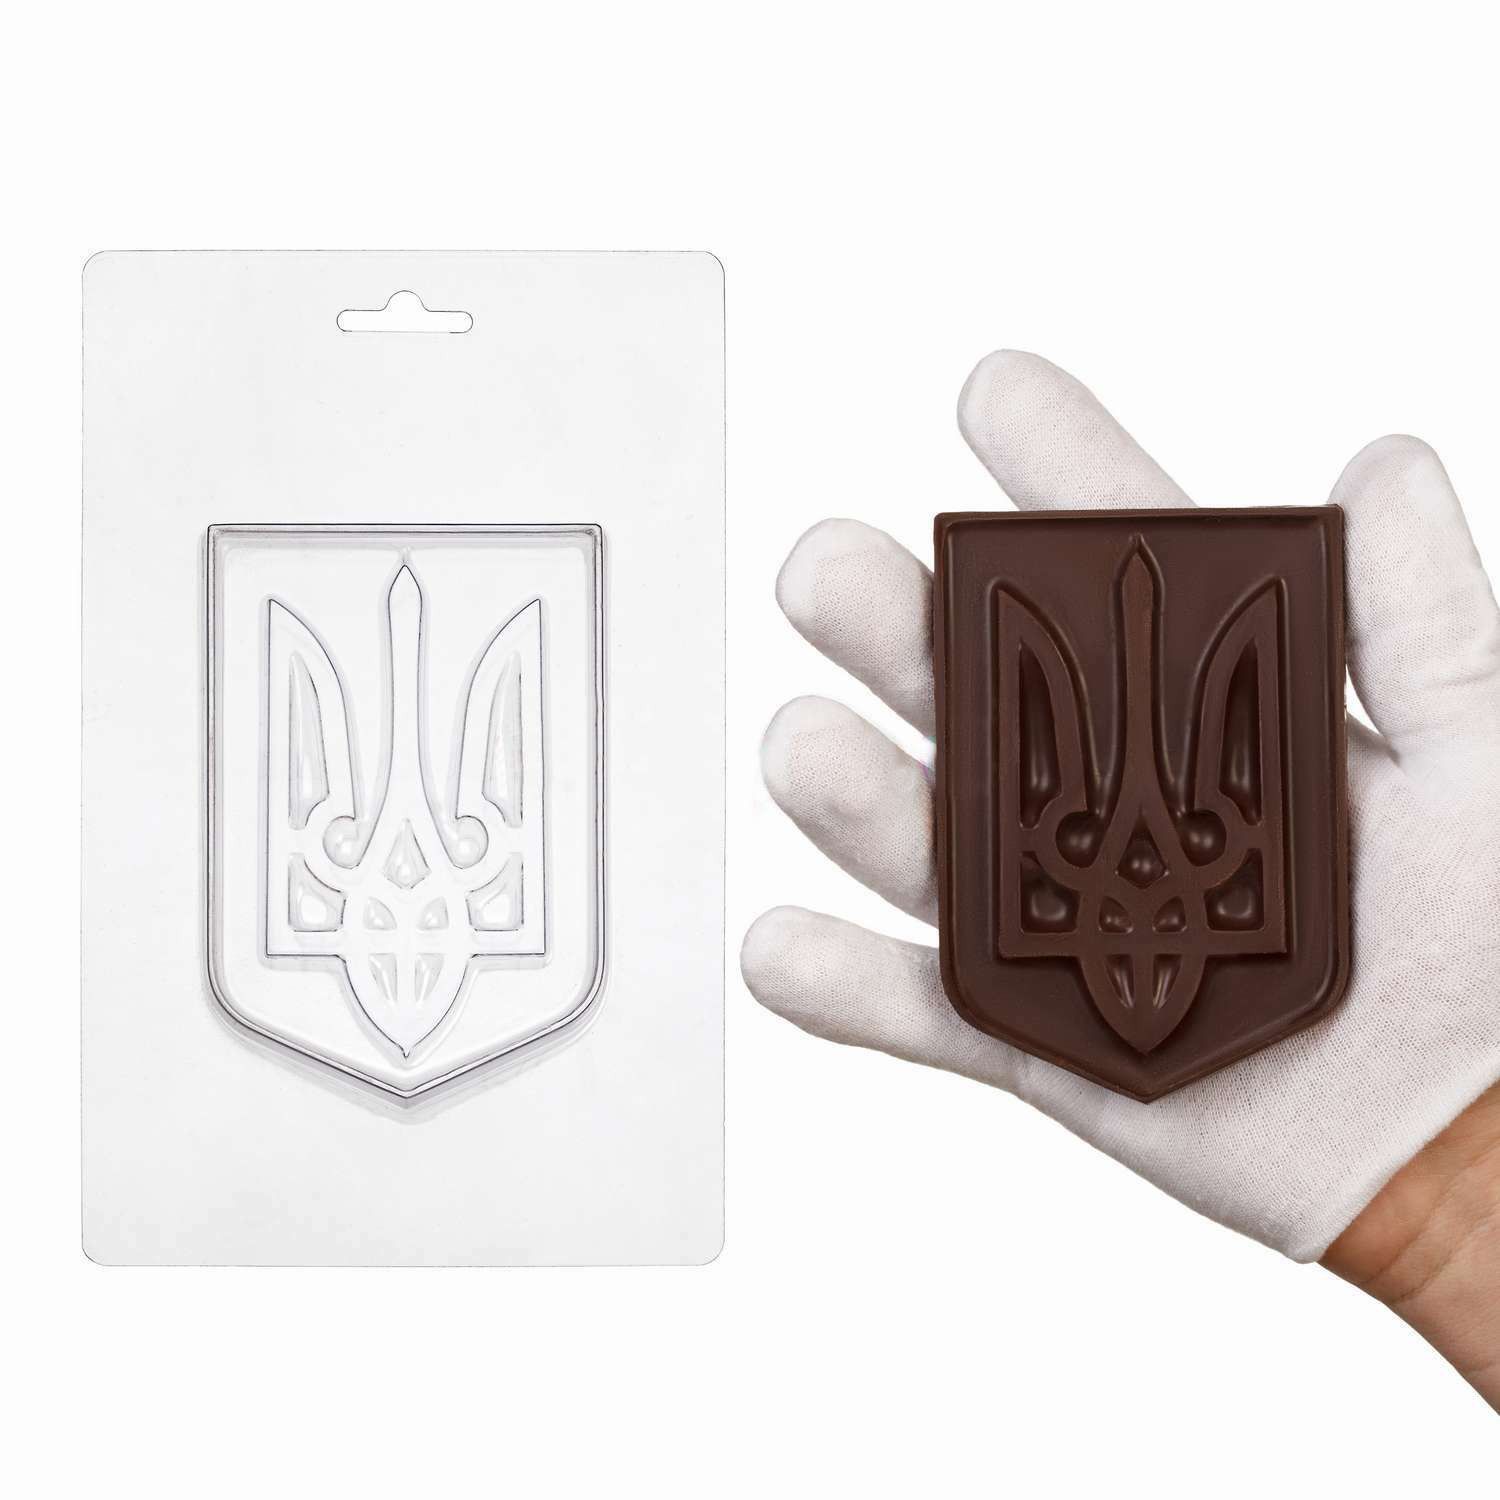 ⋗ Пластиковая форма для шоколада Герб Украины купить в Украине ➛ CakeShop.com.ua, фото